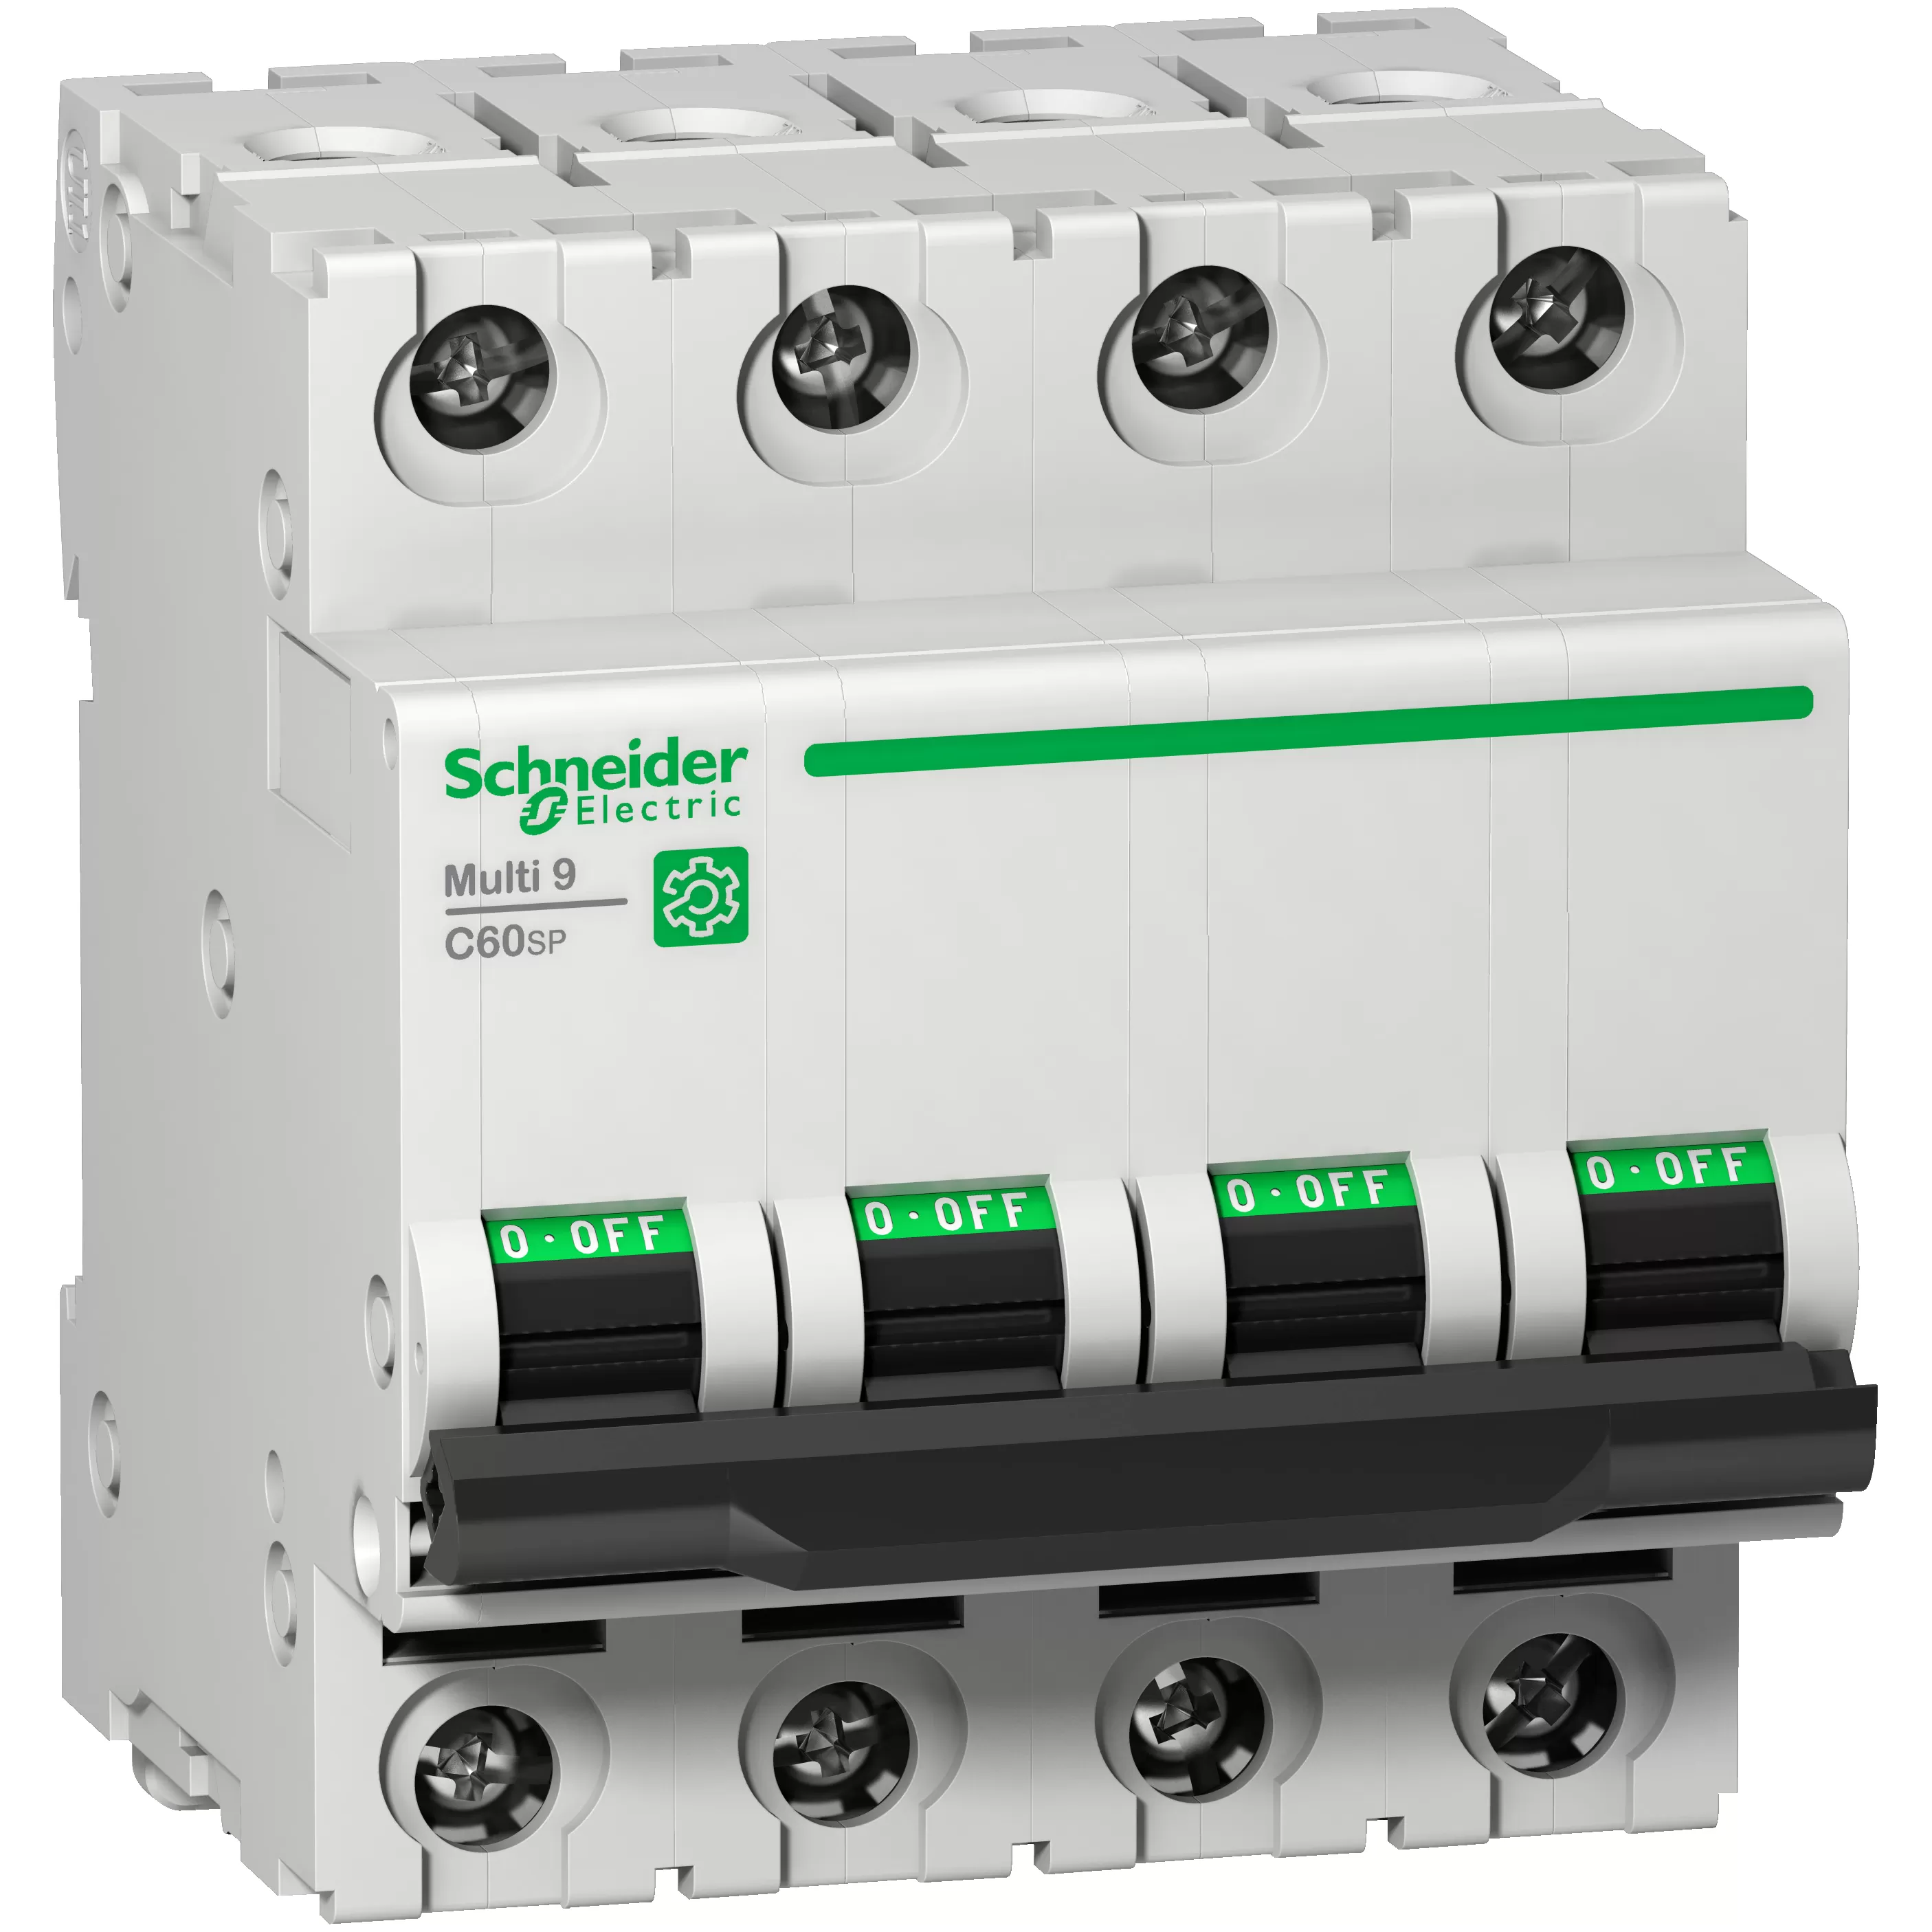 Schneider Electric Multi 9 OEM LS-Schalter C60SP 4-polig 45A B-Char. 5kA 480Y/277V UL1077 M9F21445